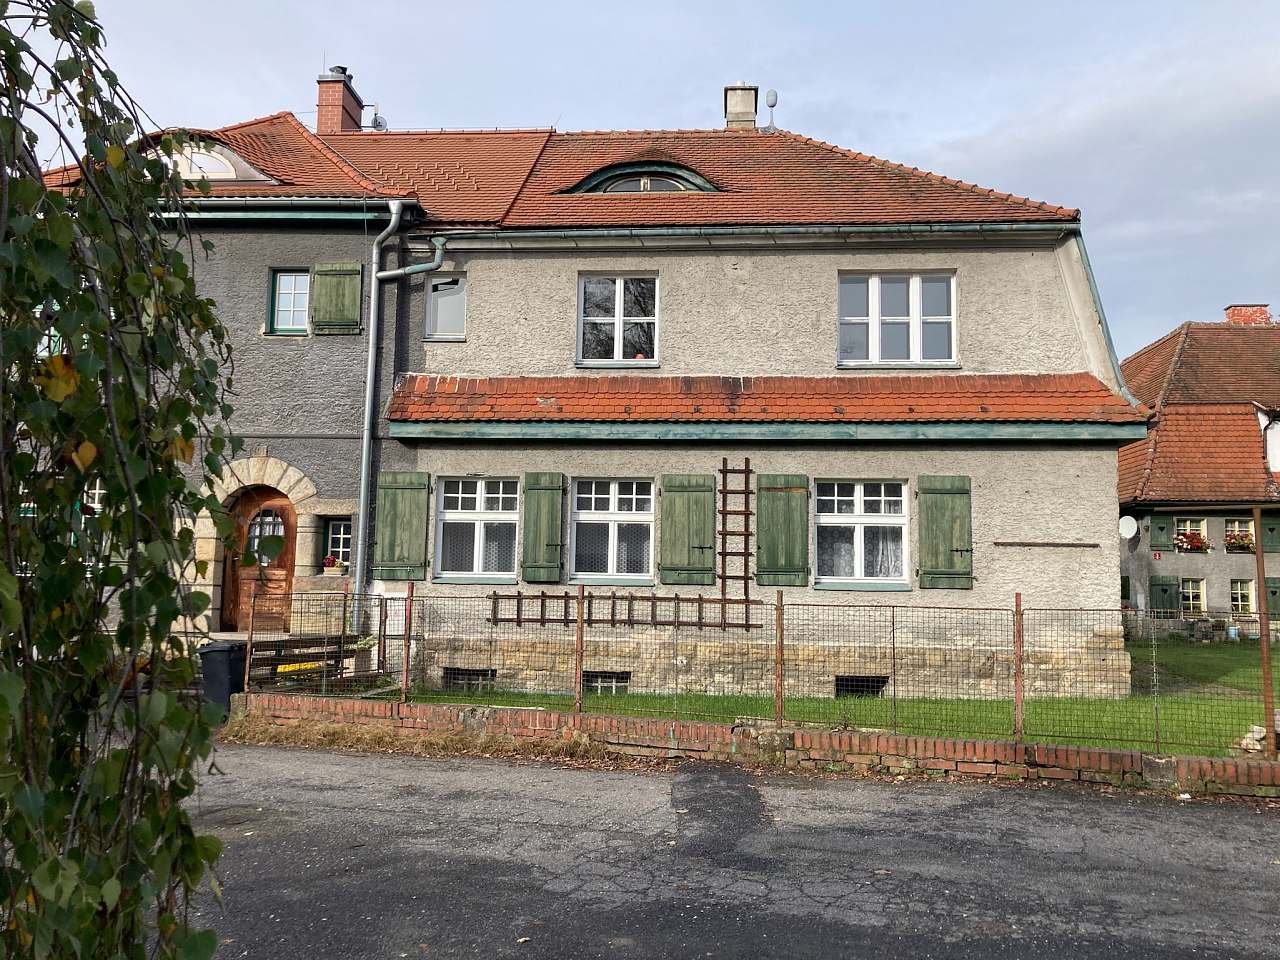 Apartments at the Johannitská command Český Dub